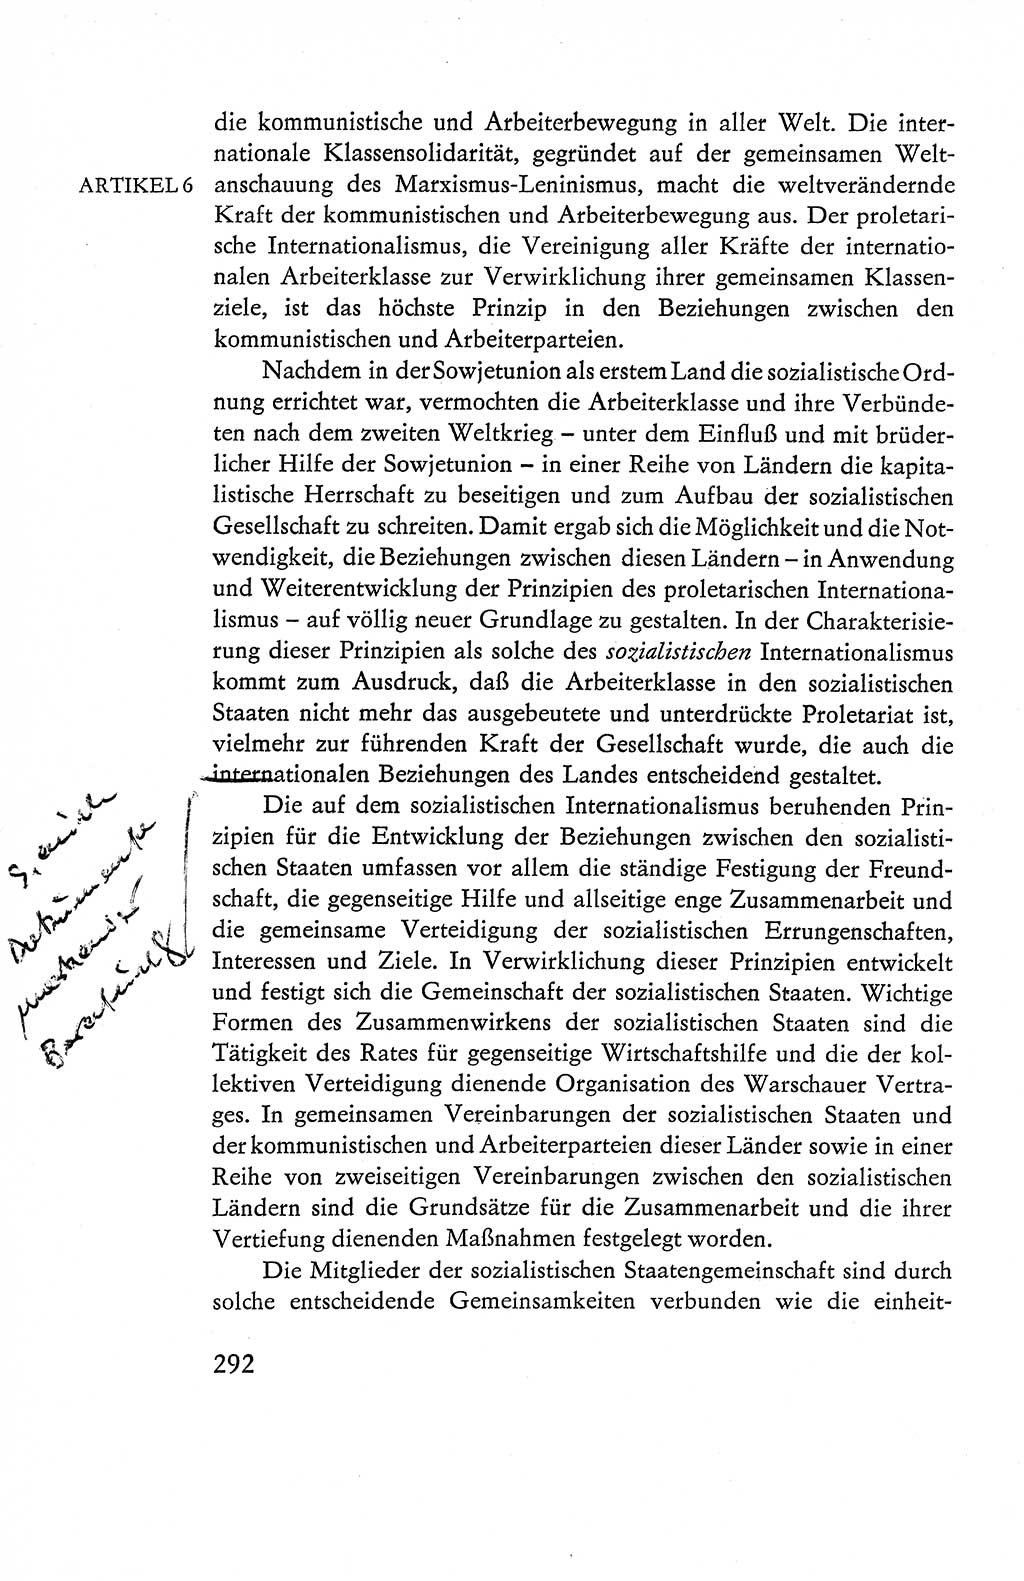 Verfassung der Deutschen Demokratischen Republik (DDR), Dokumente, Kommentar 1969, Band 1, Seite 292 (Verf. DDR Dok. Komm. 1969, Bd. 1, S. 292)